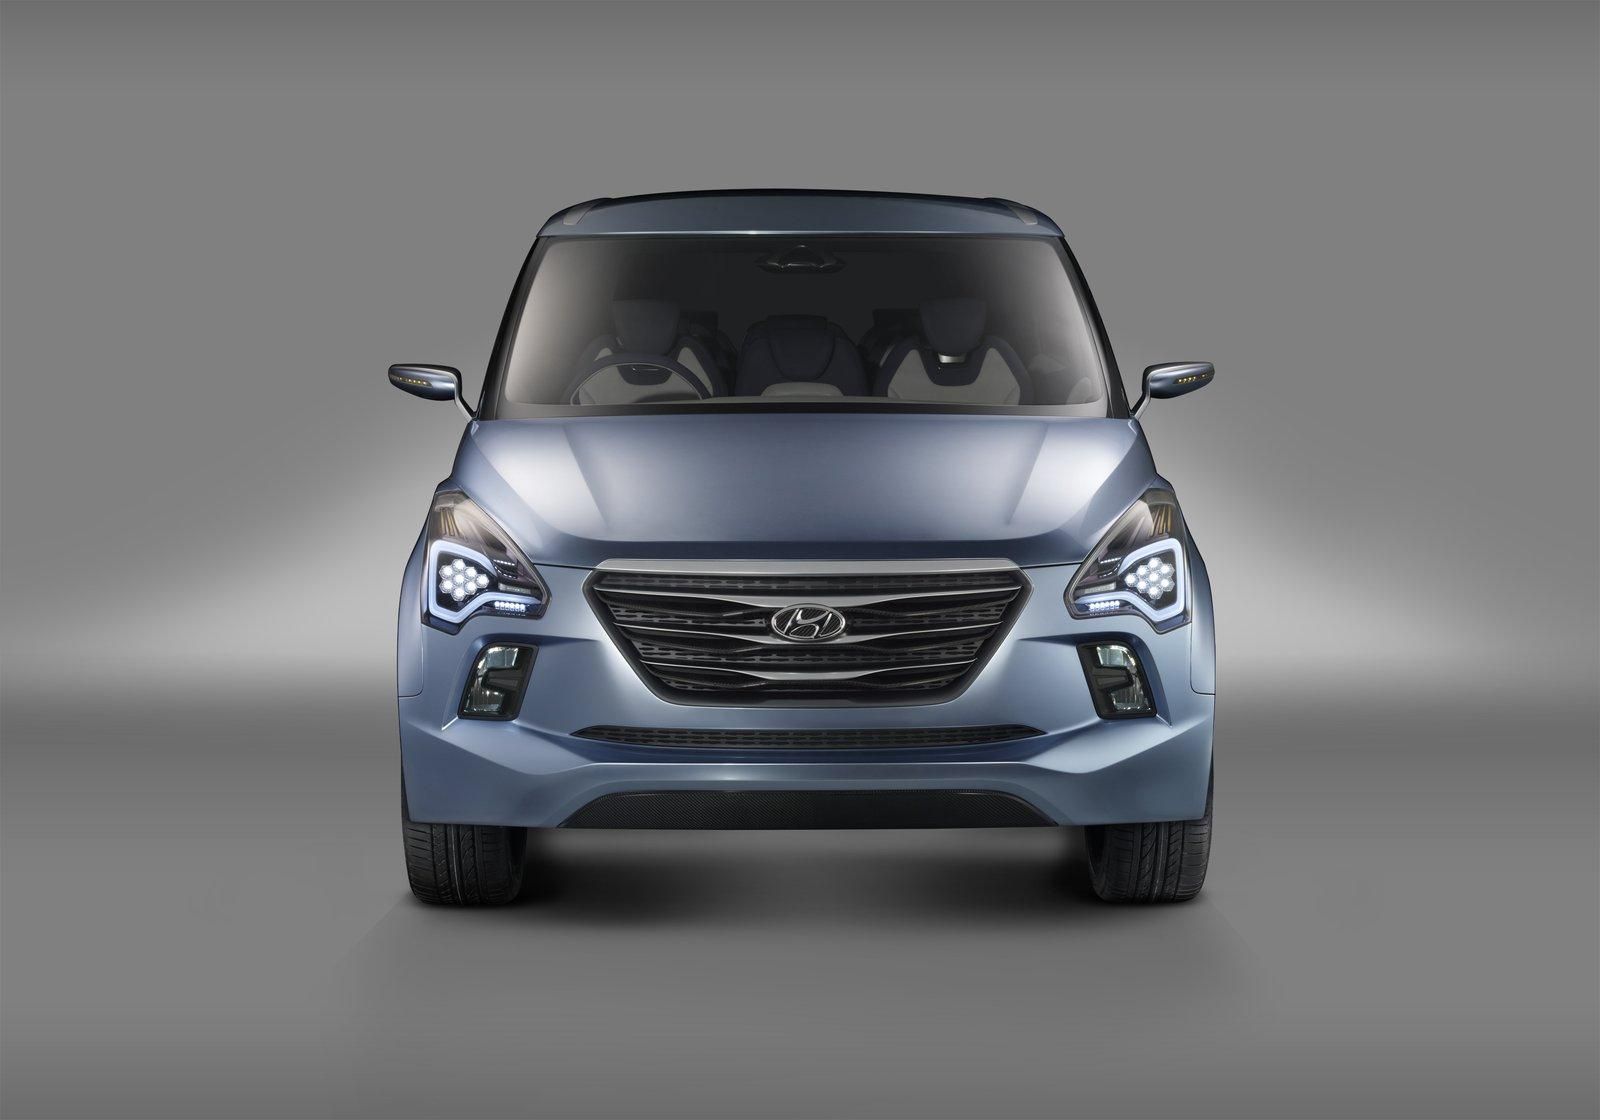 2012 Hyundai Hexa Space Concept (HND-7)